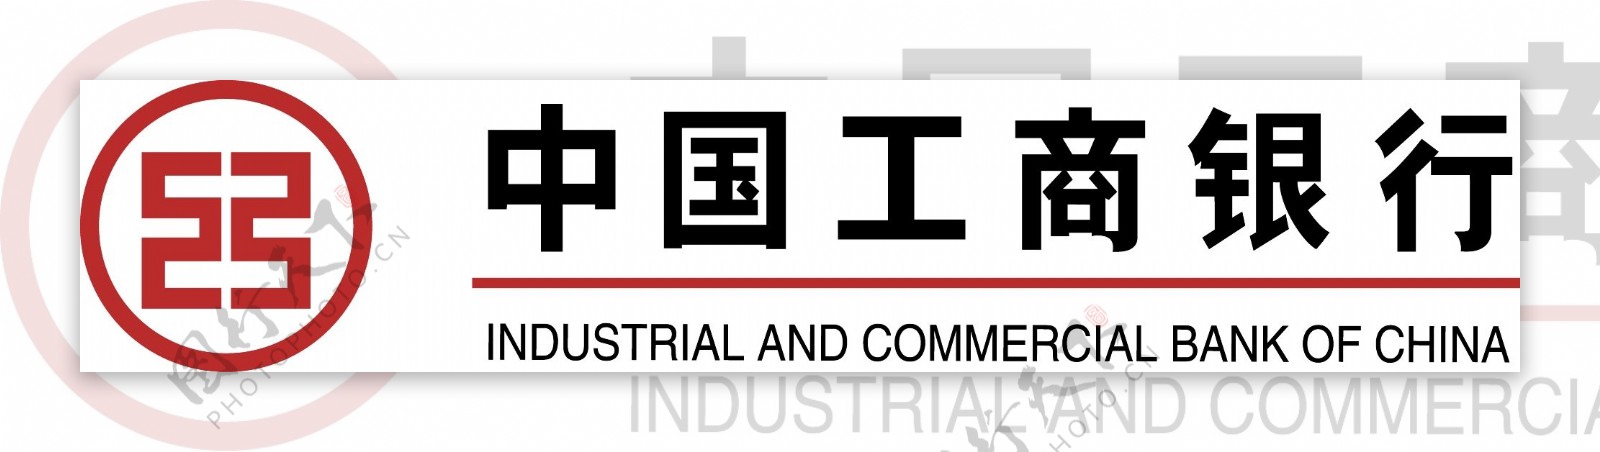 中国工商银行IndustrialCommercialBankofChina